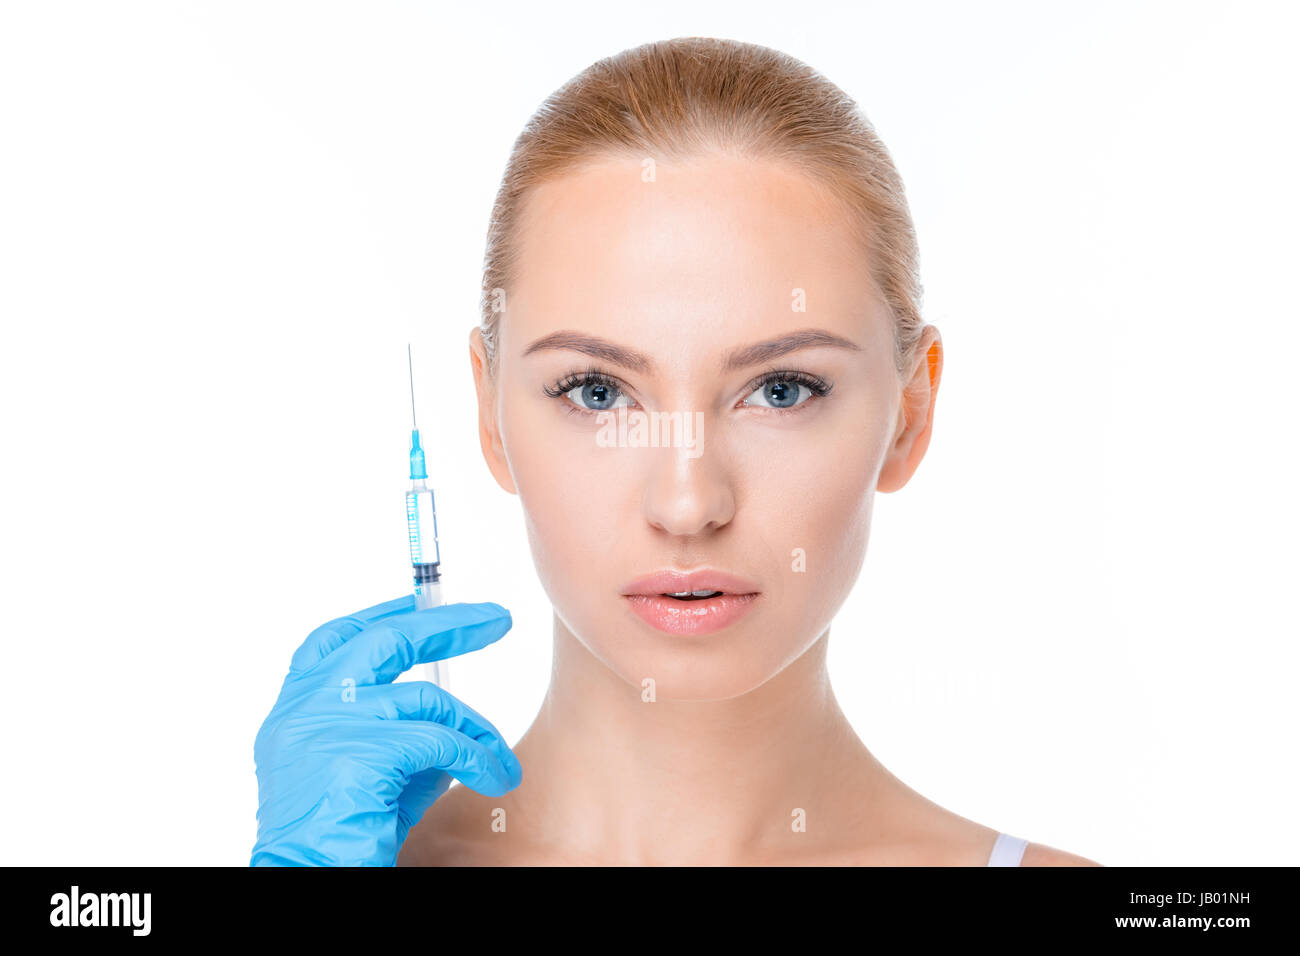 Portrait de femme avec seringue pour injection dans la main à la recherche d'appareil photo sur white Banque D'Images